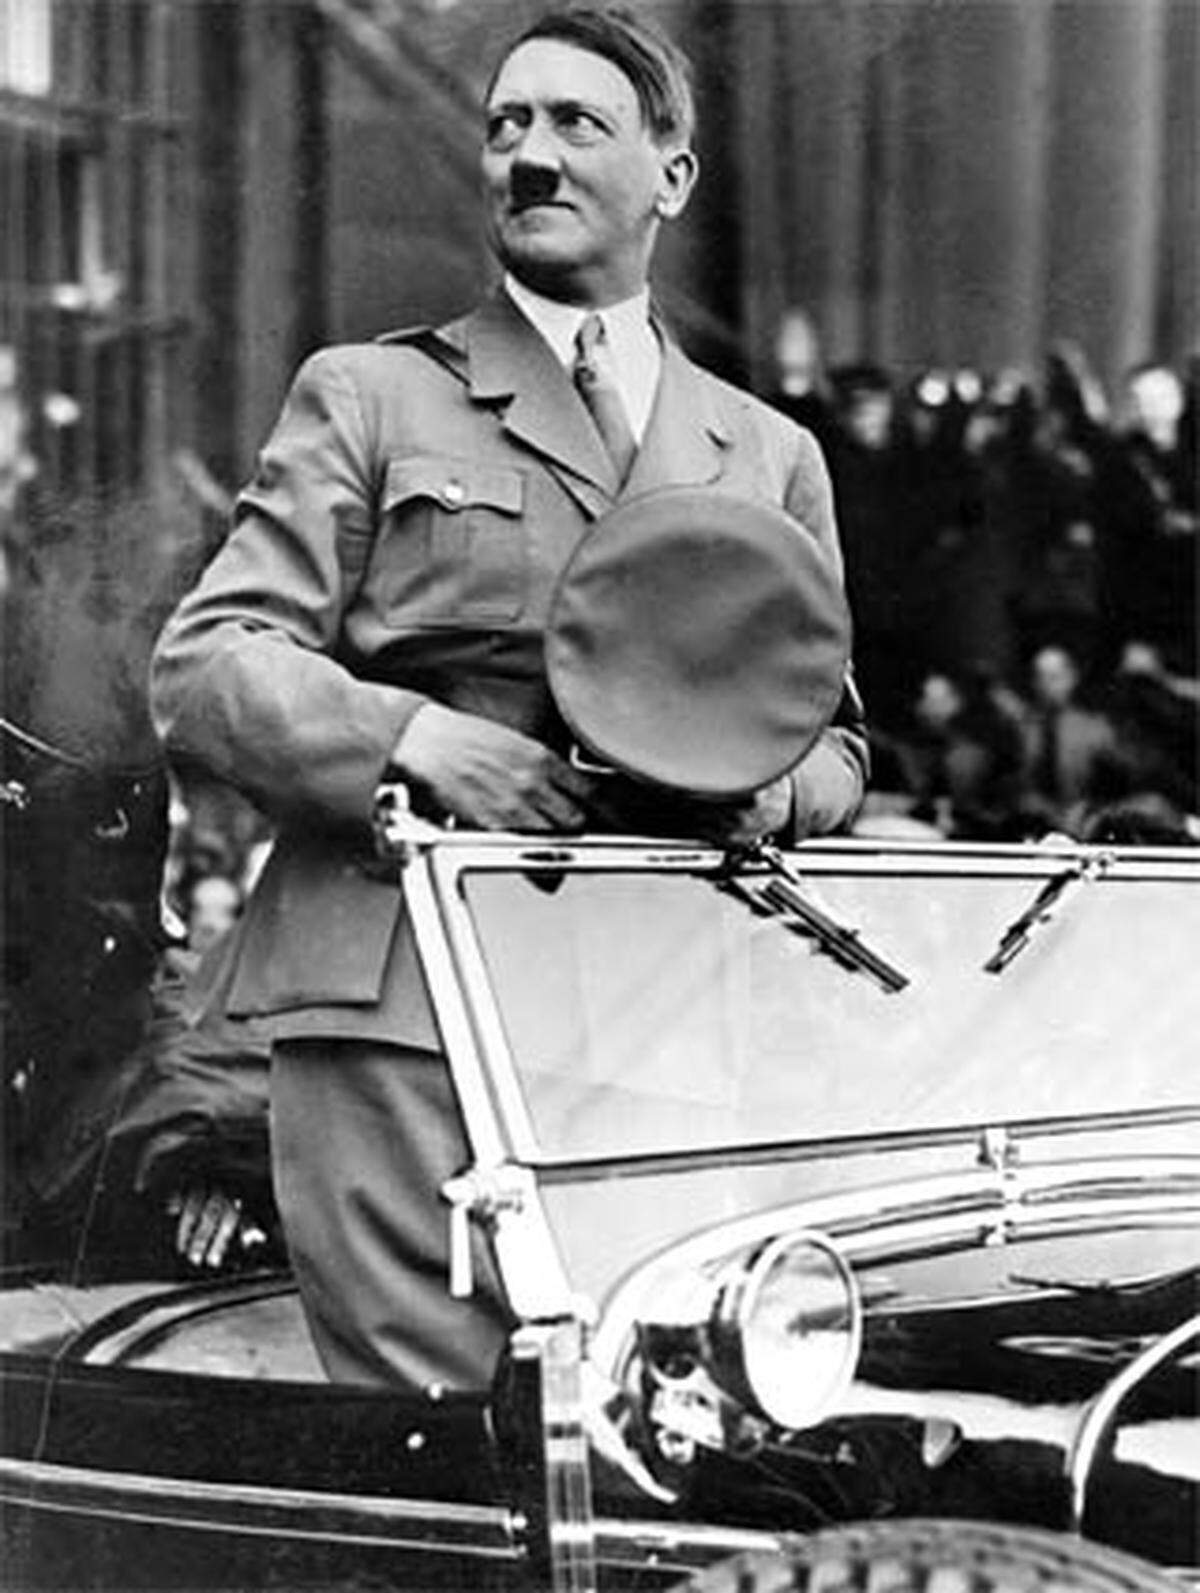 Bundeskanzler Engelbert Dollfuß regiert nach der Ausschaltung des Parlaments einen autoritären Ständestaat. In Deutschland ist bereits Adolf Hitler an den Macht. In Österreich ist die NSDAP verboten.